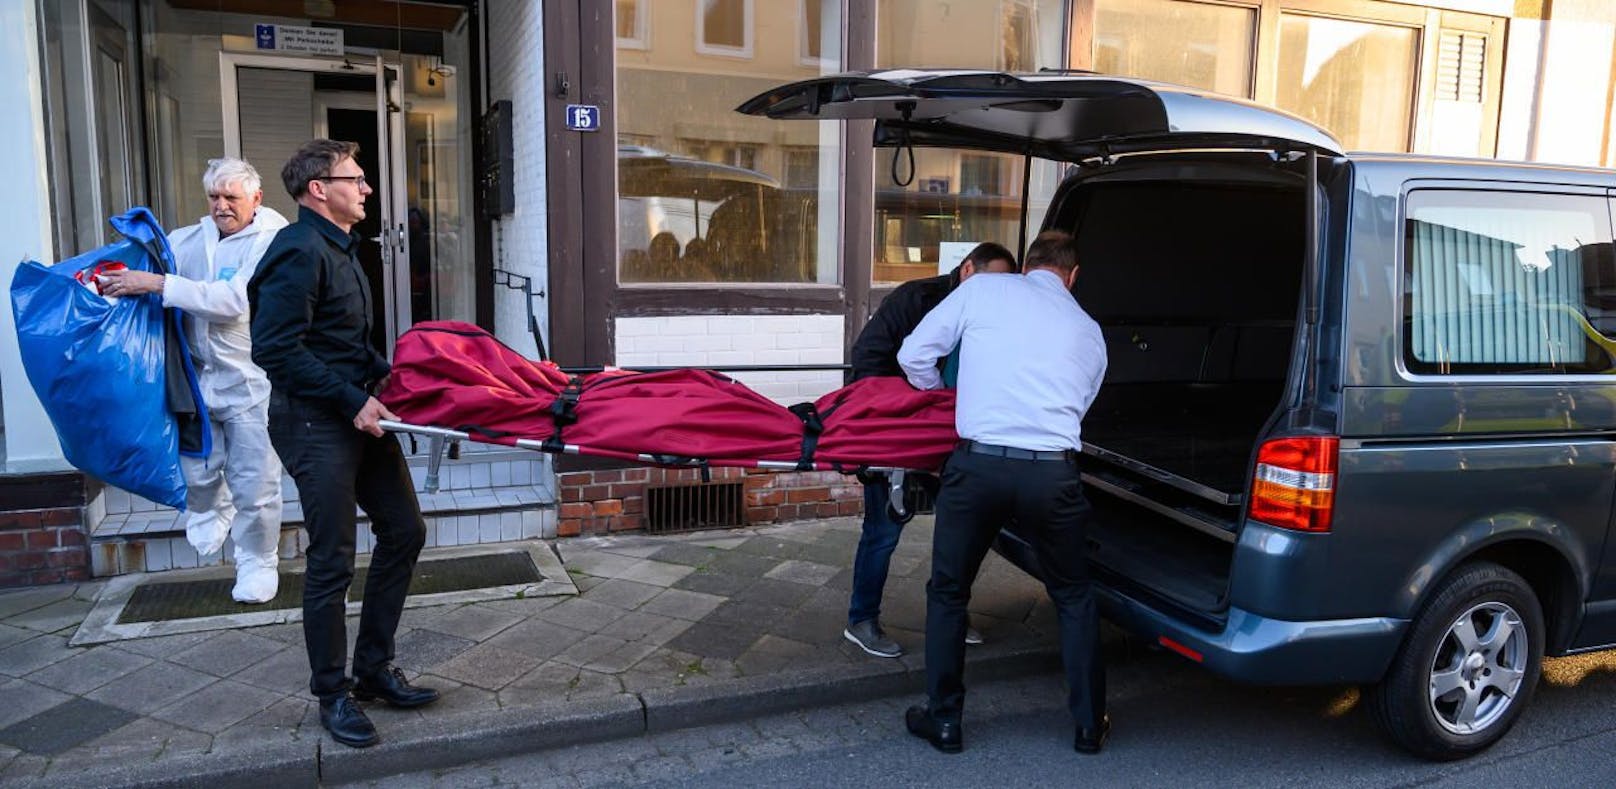 Armbrust-Mord in Passau: Neue Details bekannt